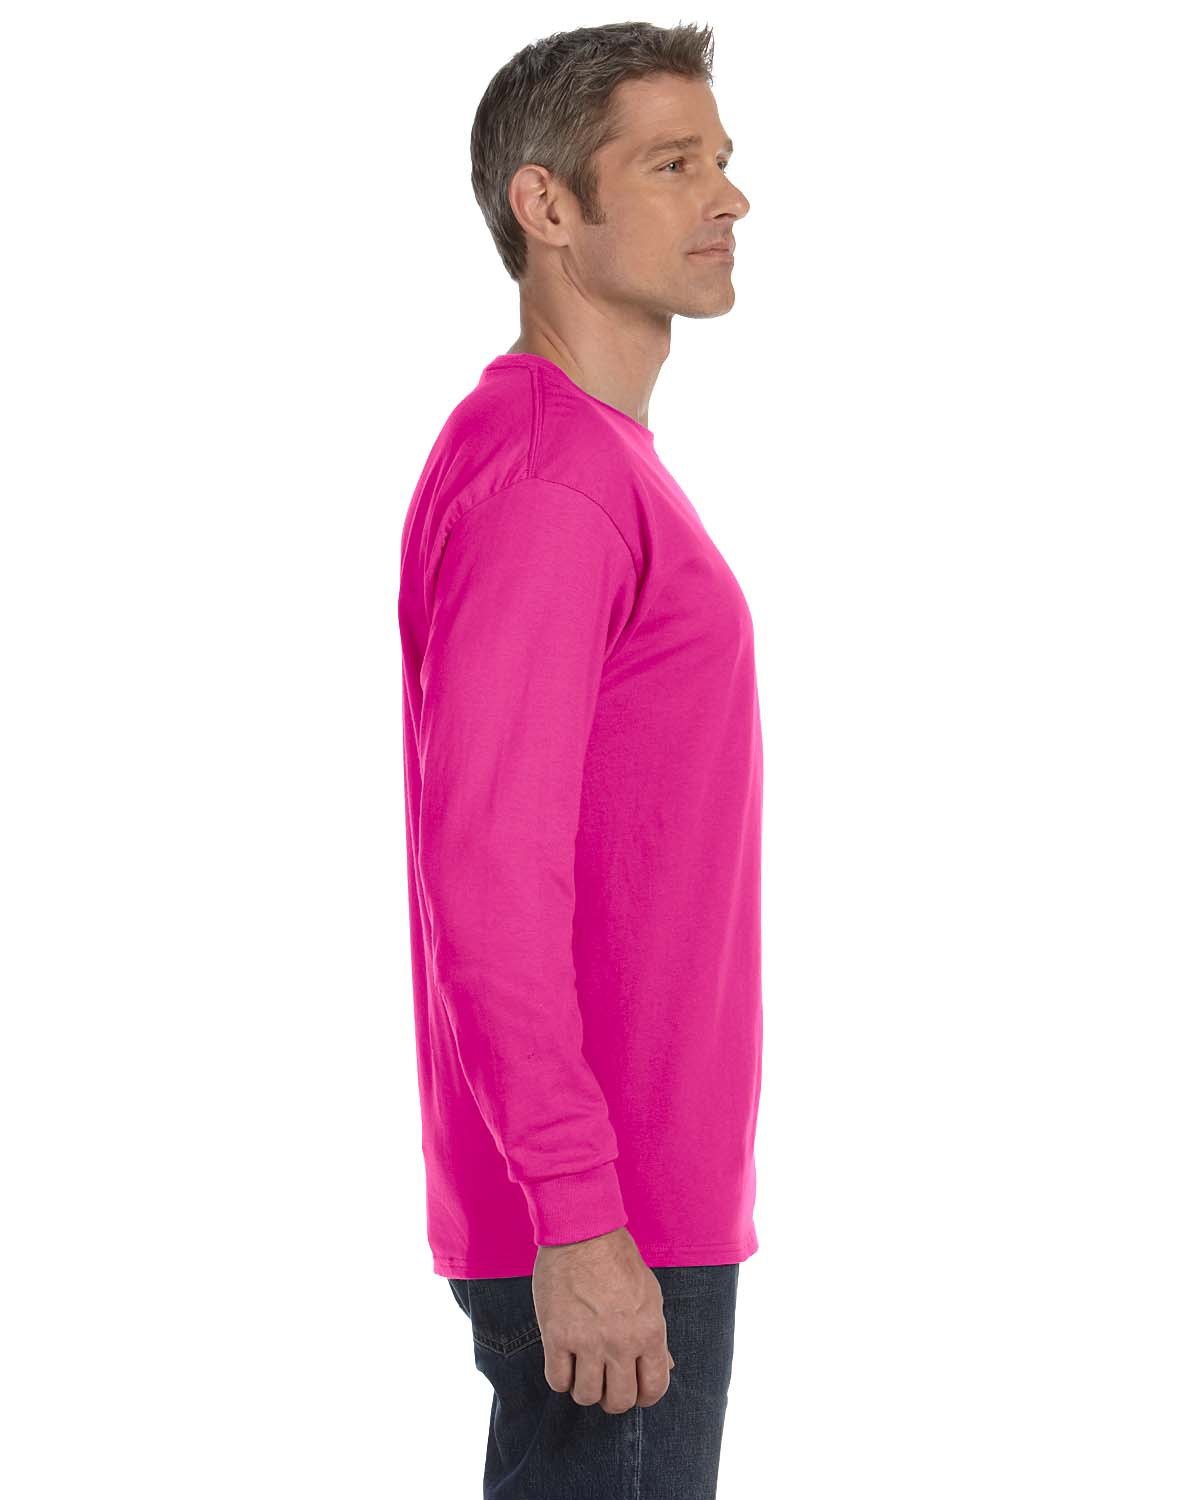 Jerzees Adult Heavyweight BlendT-Shirt - Neon Pink - 3XL